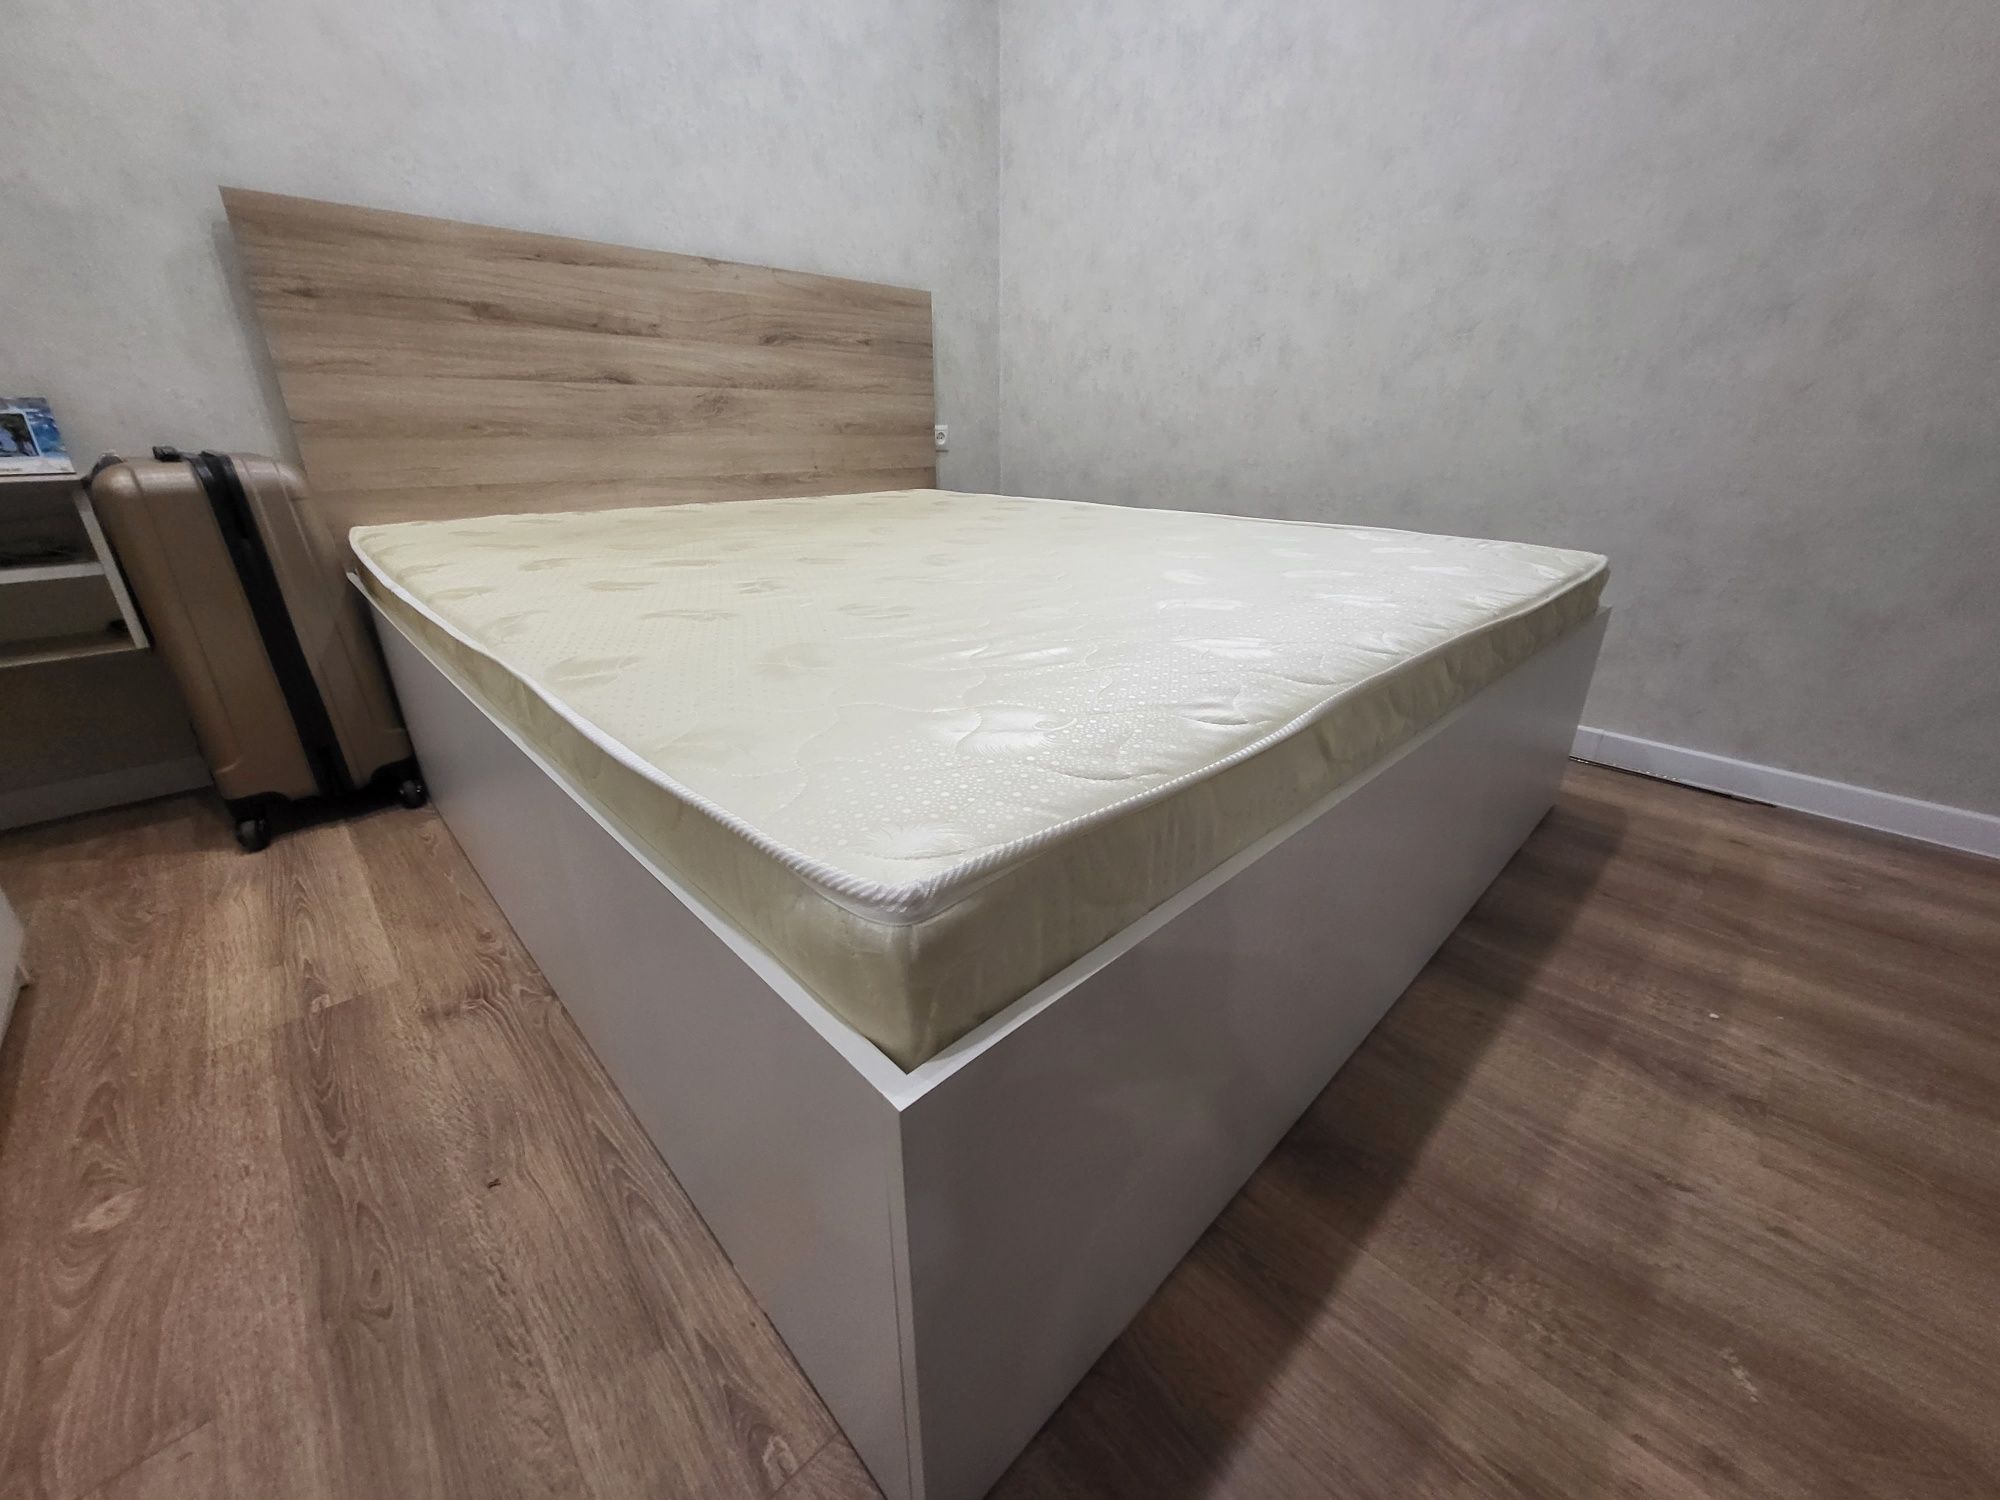 Продам кровать размер 160 на 190 см , новая